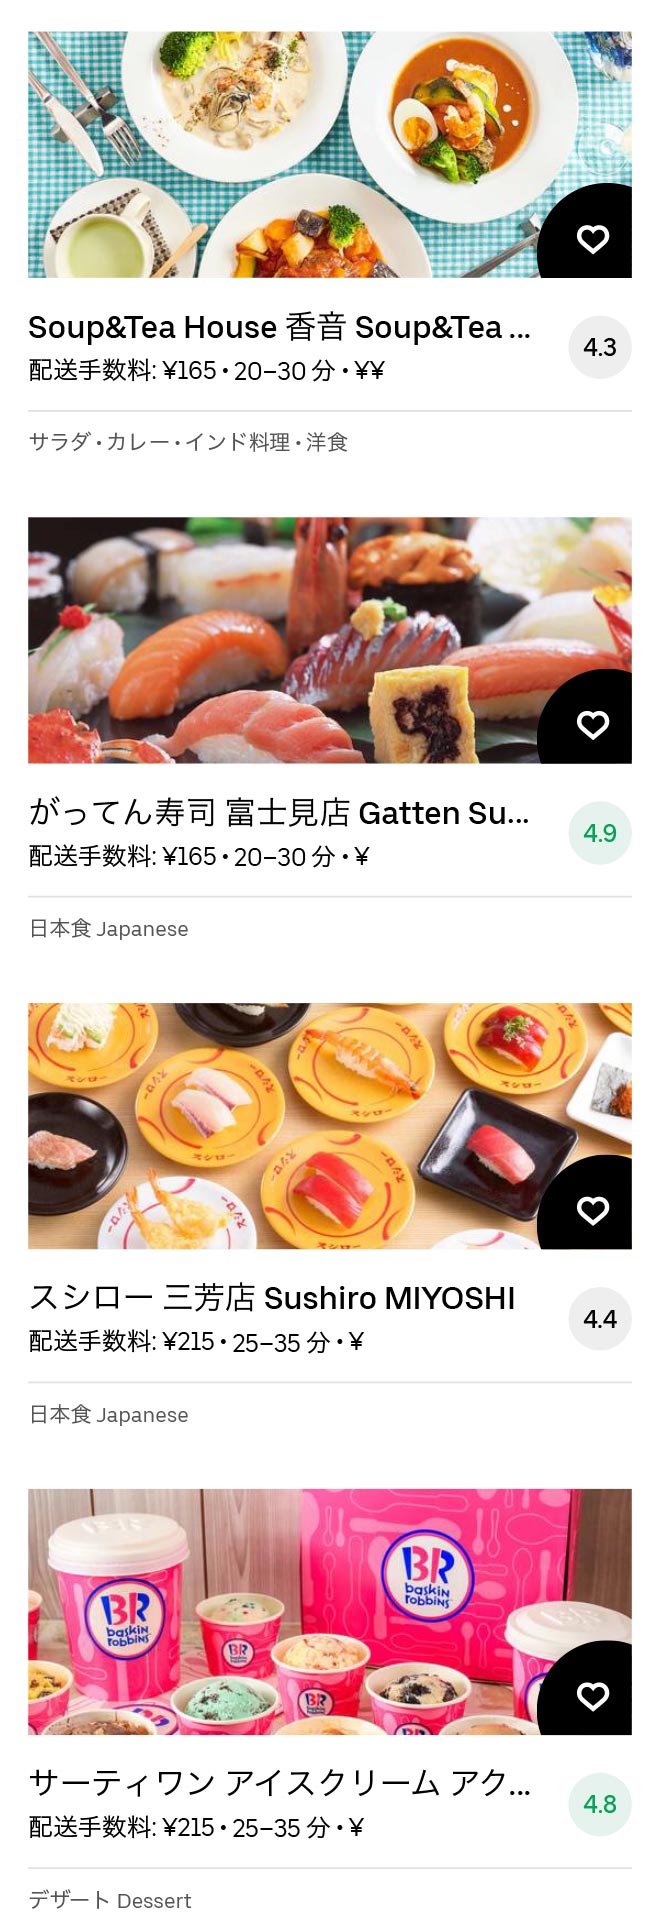 Tsuruse menu 2011 06